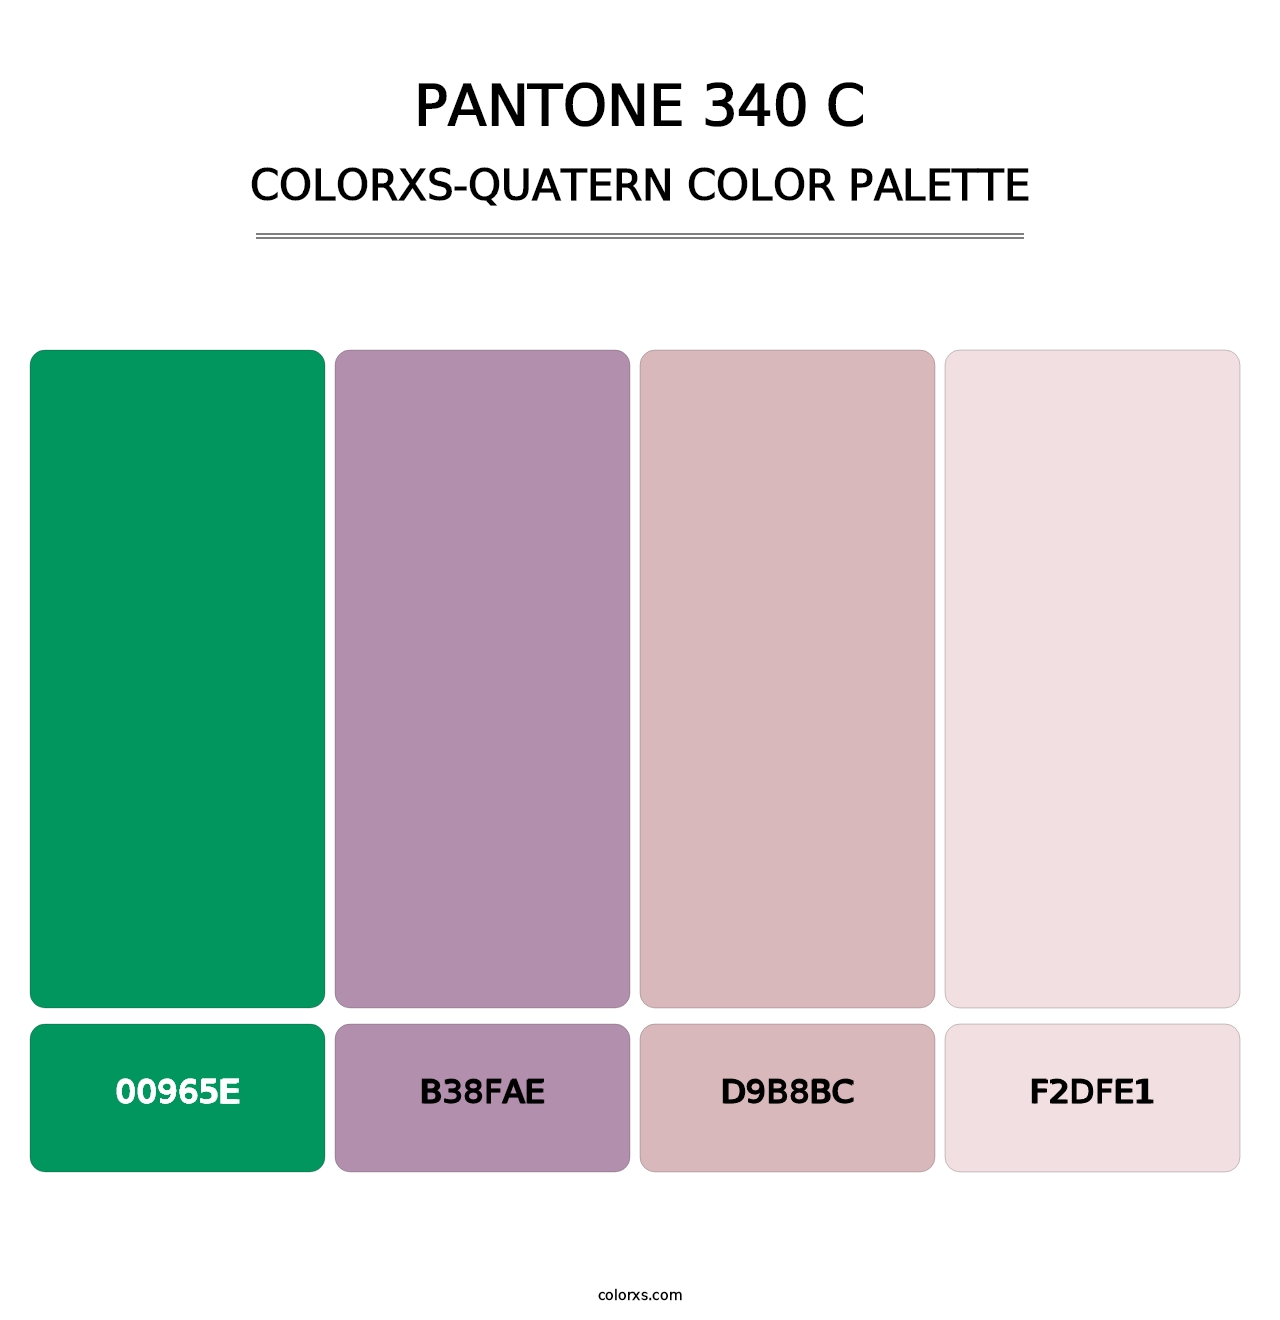 PANTONE 340 C - Colorxs Quatern Palette